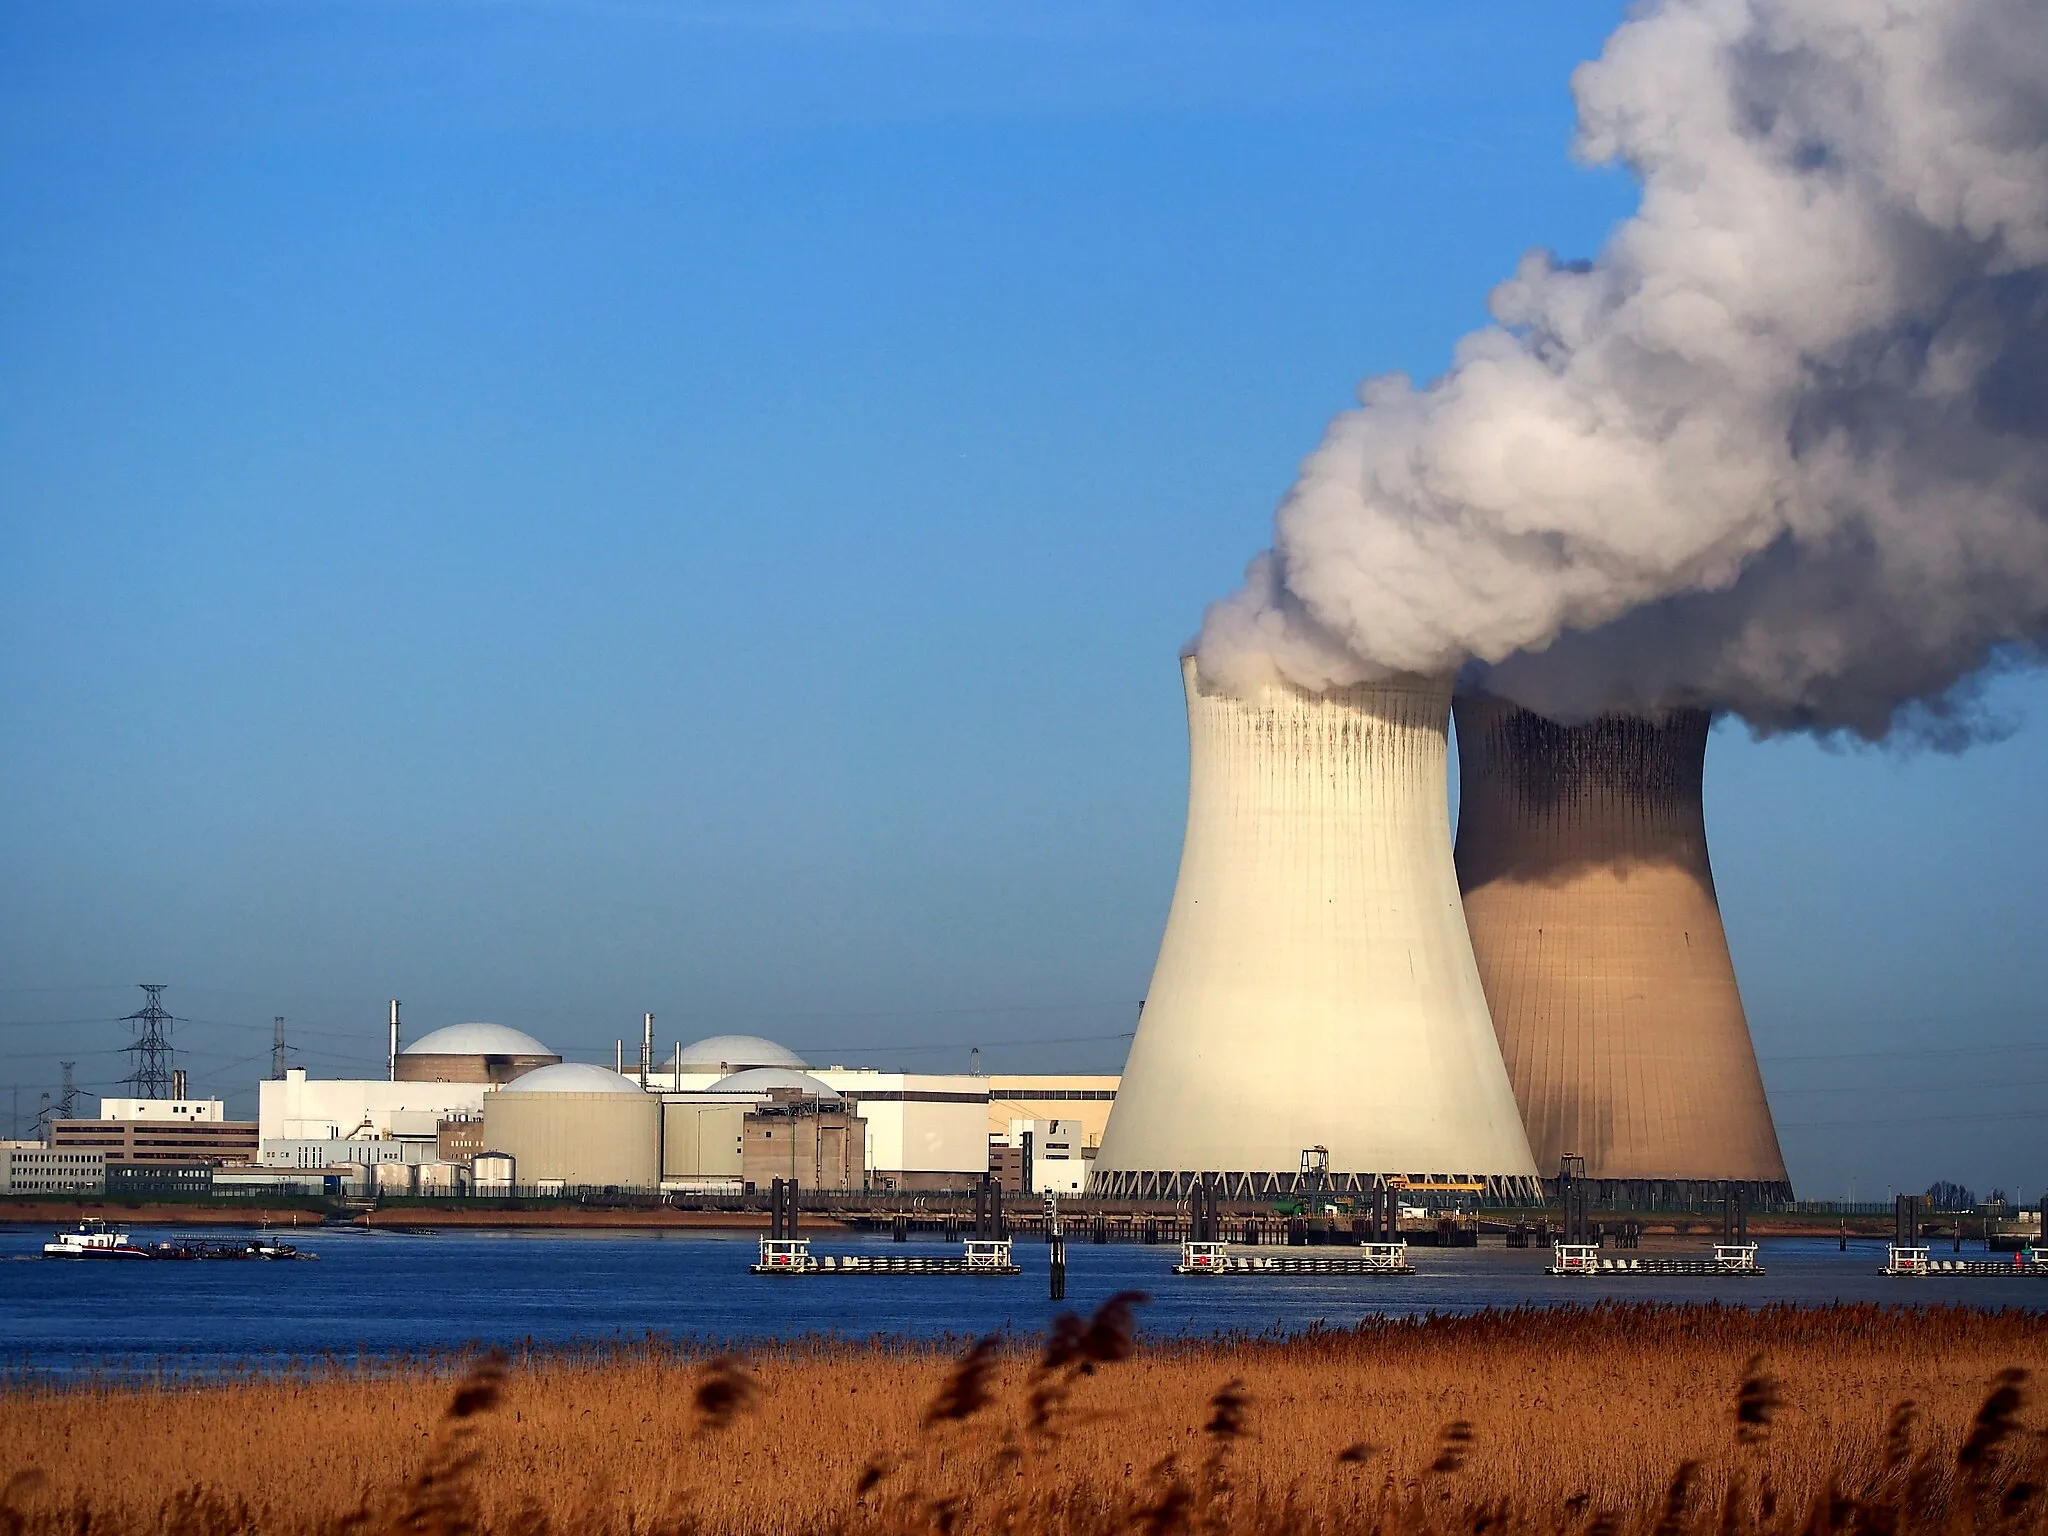 België kiest voor innovatieve energieoplossingen: verlengt reactorlevensduur en investeert in nieuwe generatie kernreactoren